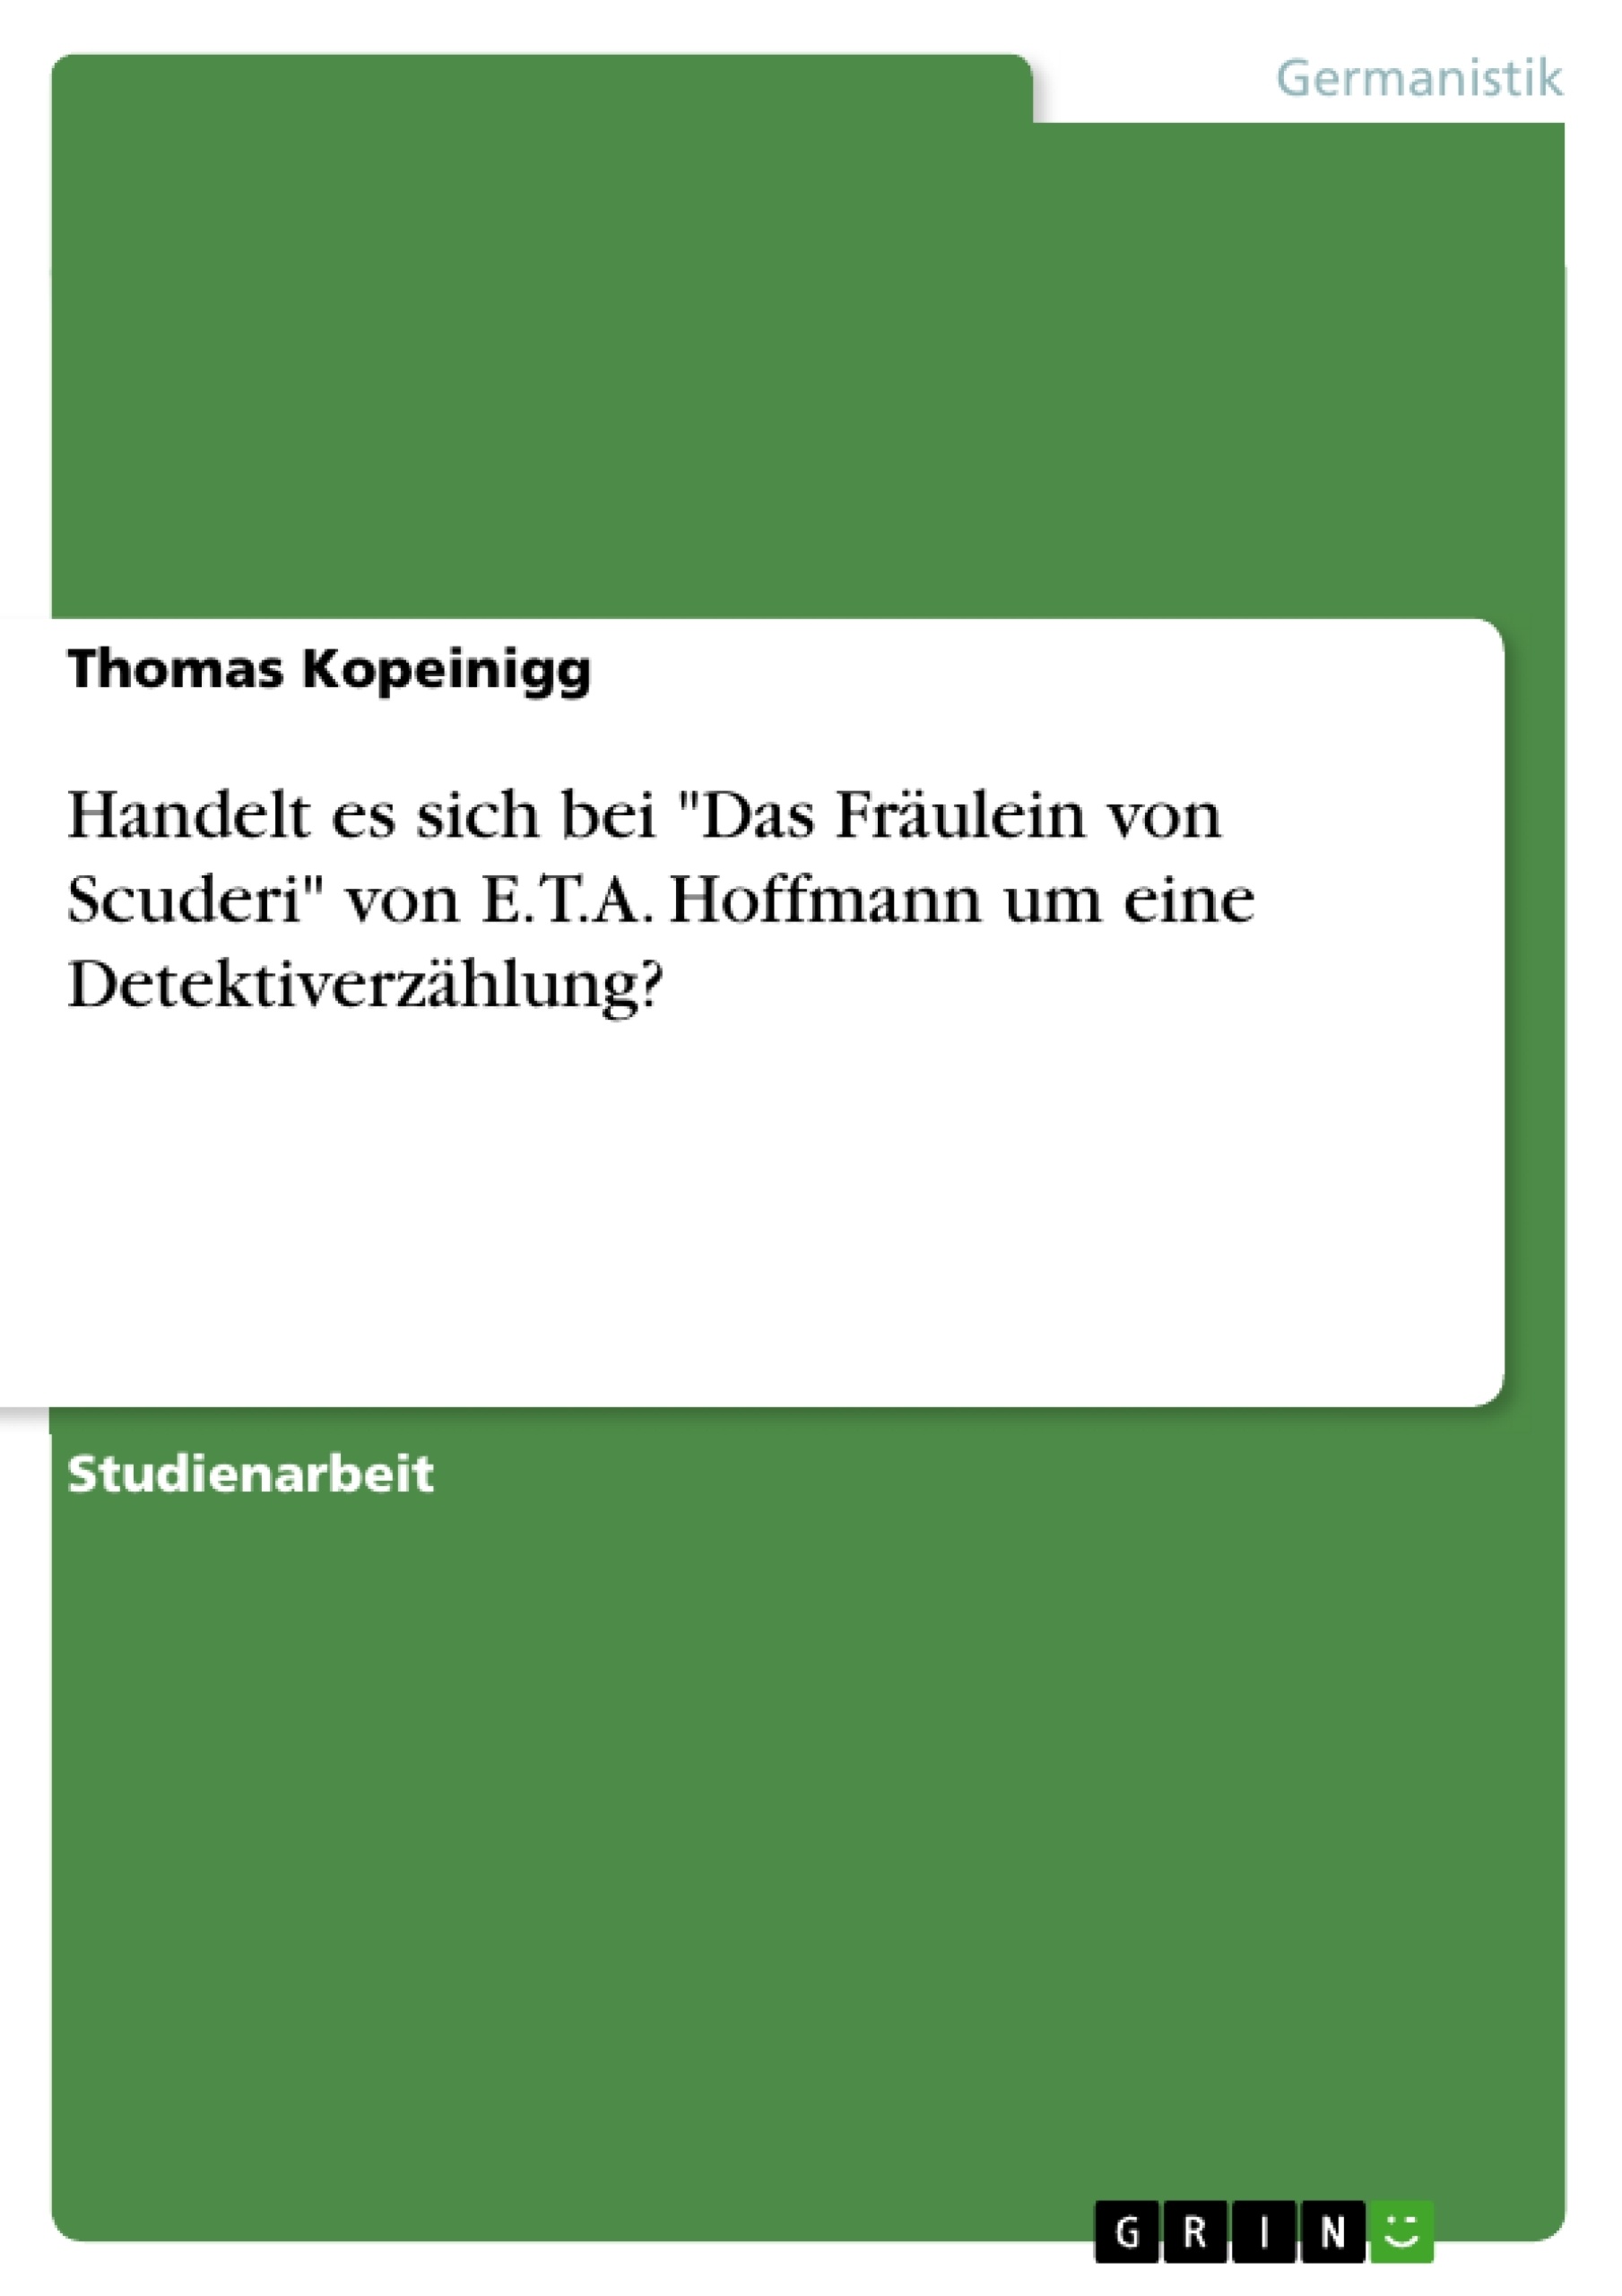 Title: Handelt es sich bei "Das Fräulein von Scuderi" von E.T.A. Hoffmann um eine Detektiverzählung?